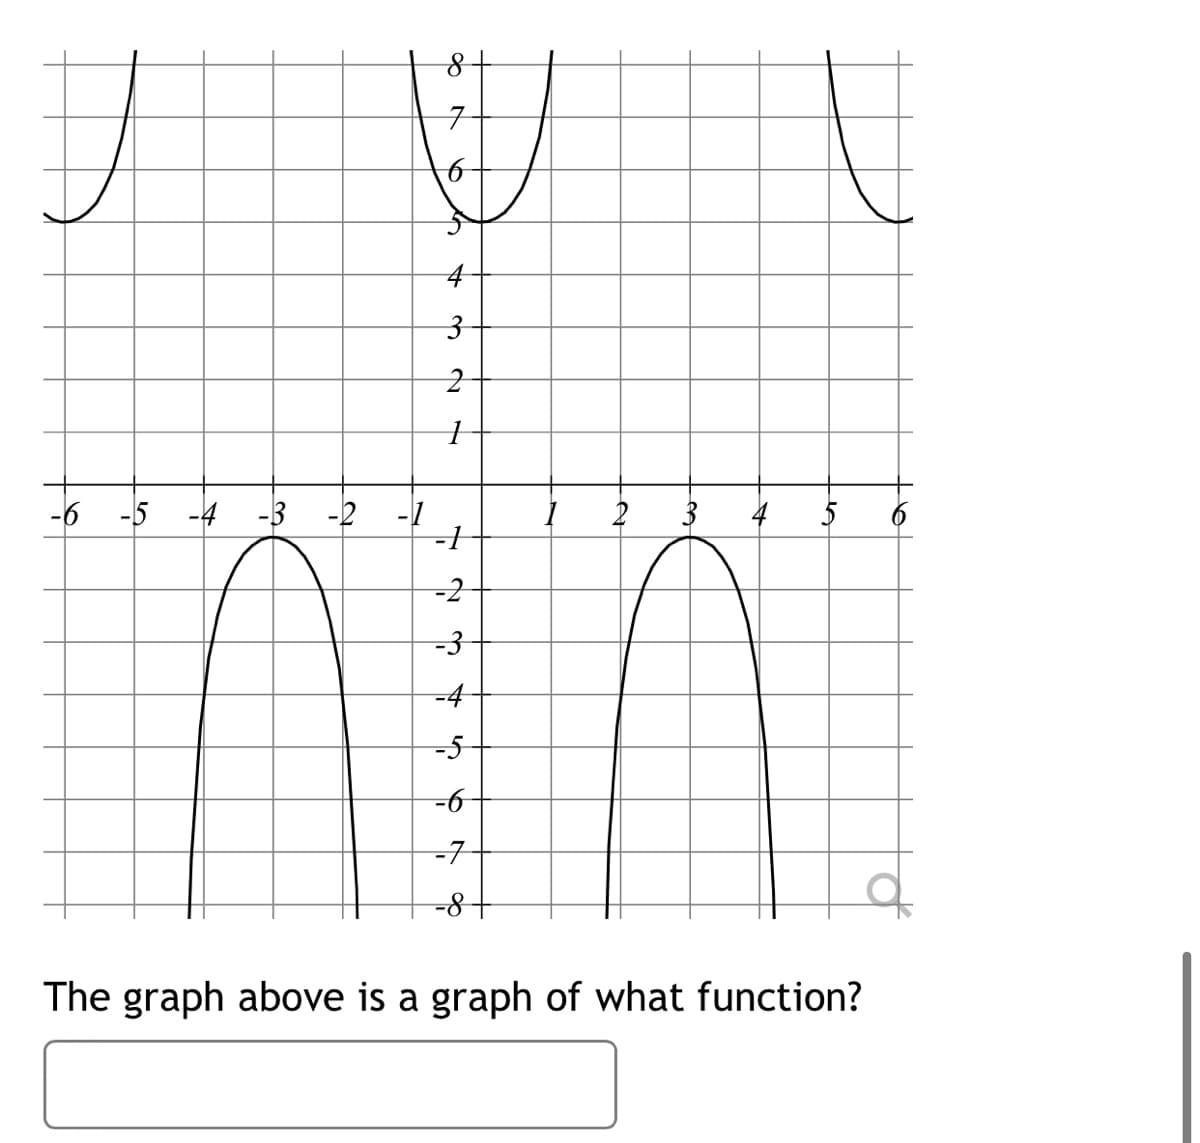 구
4
-6
-5 -4 -3
-2
-1
3
4
5
-2
-3
-4
-5
-6
-7
-8-
The graph above is a graph of what function?
to
